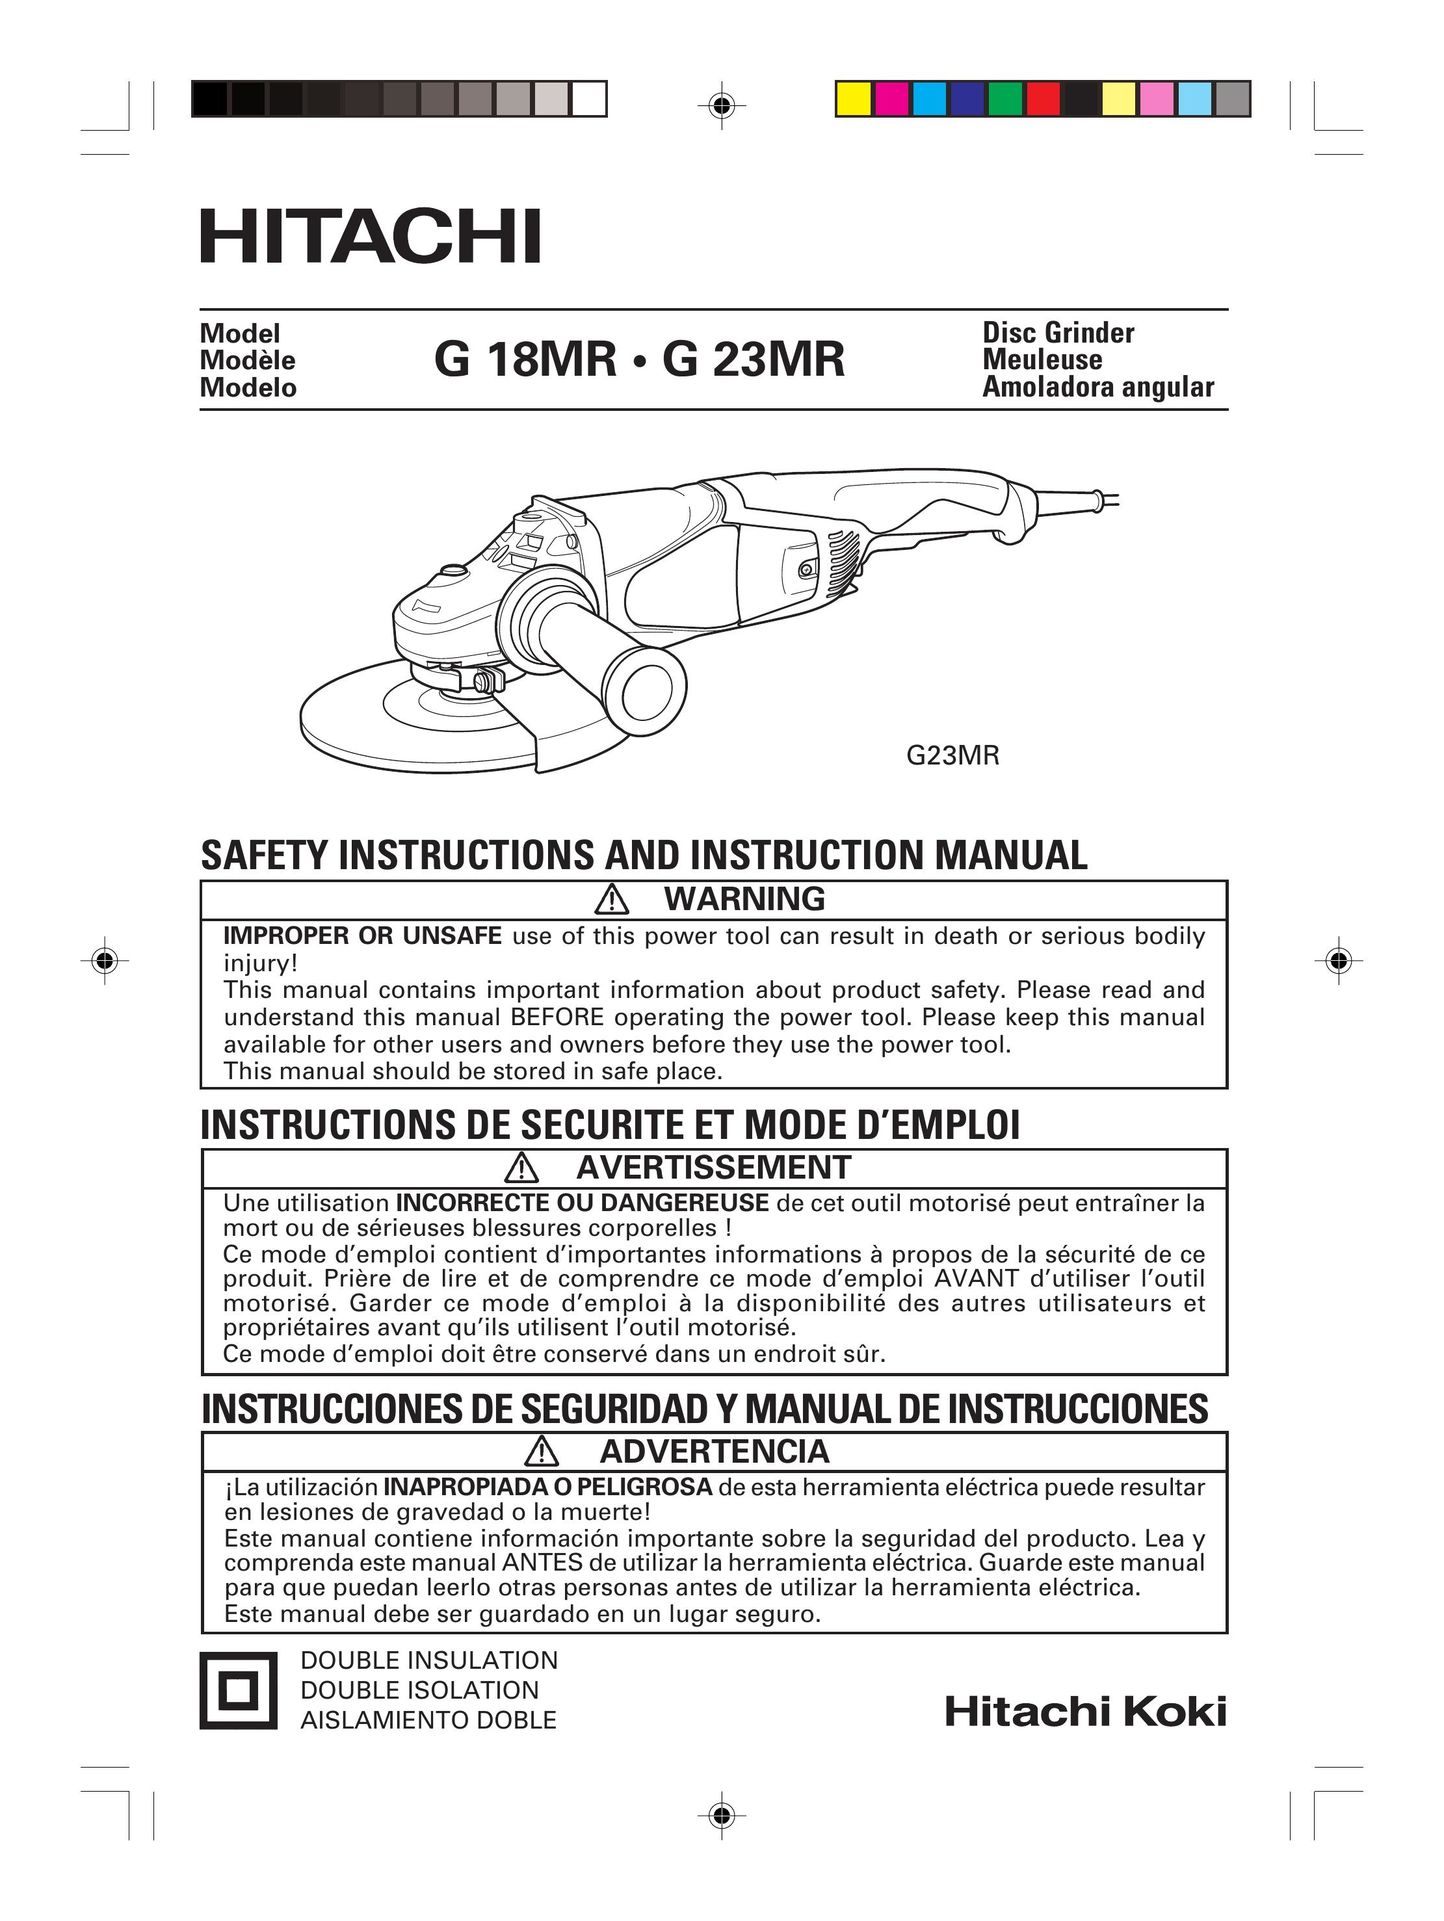 Hitachi G 23MR Grinder User Manual